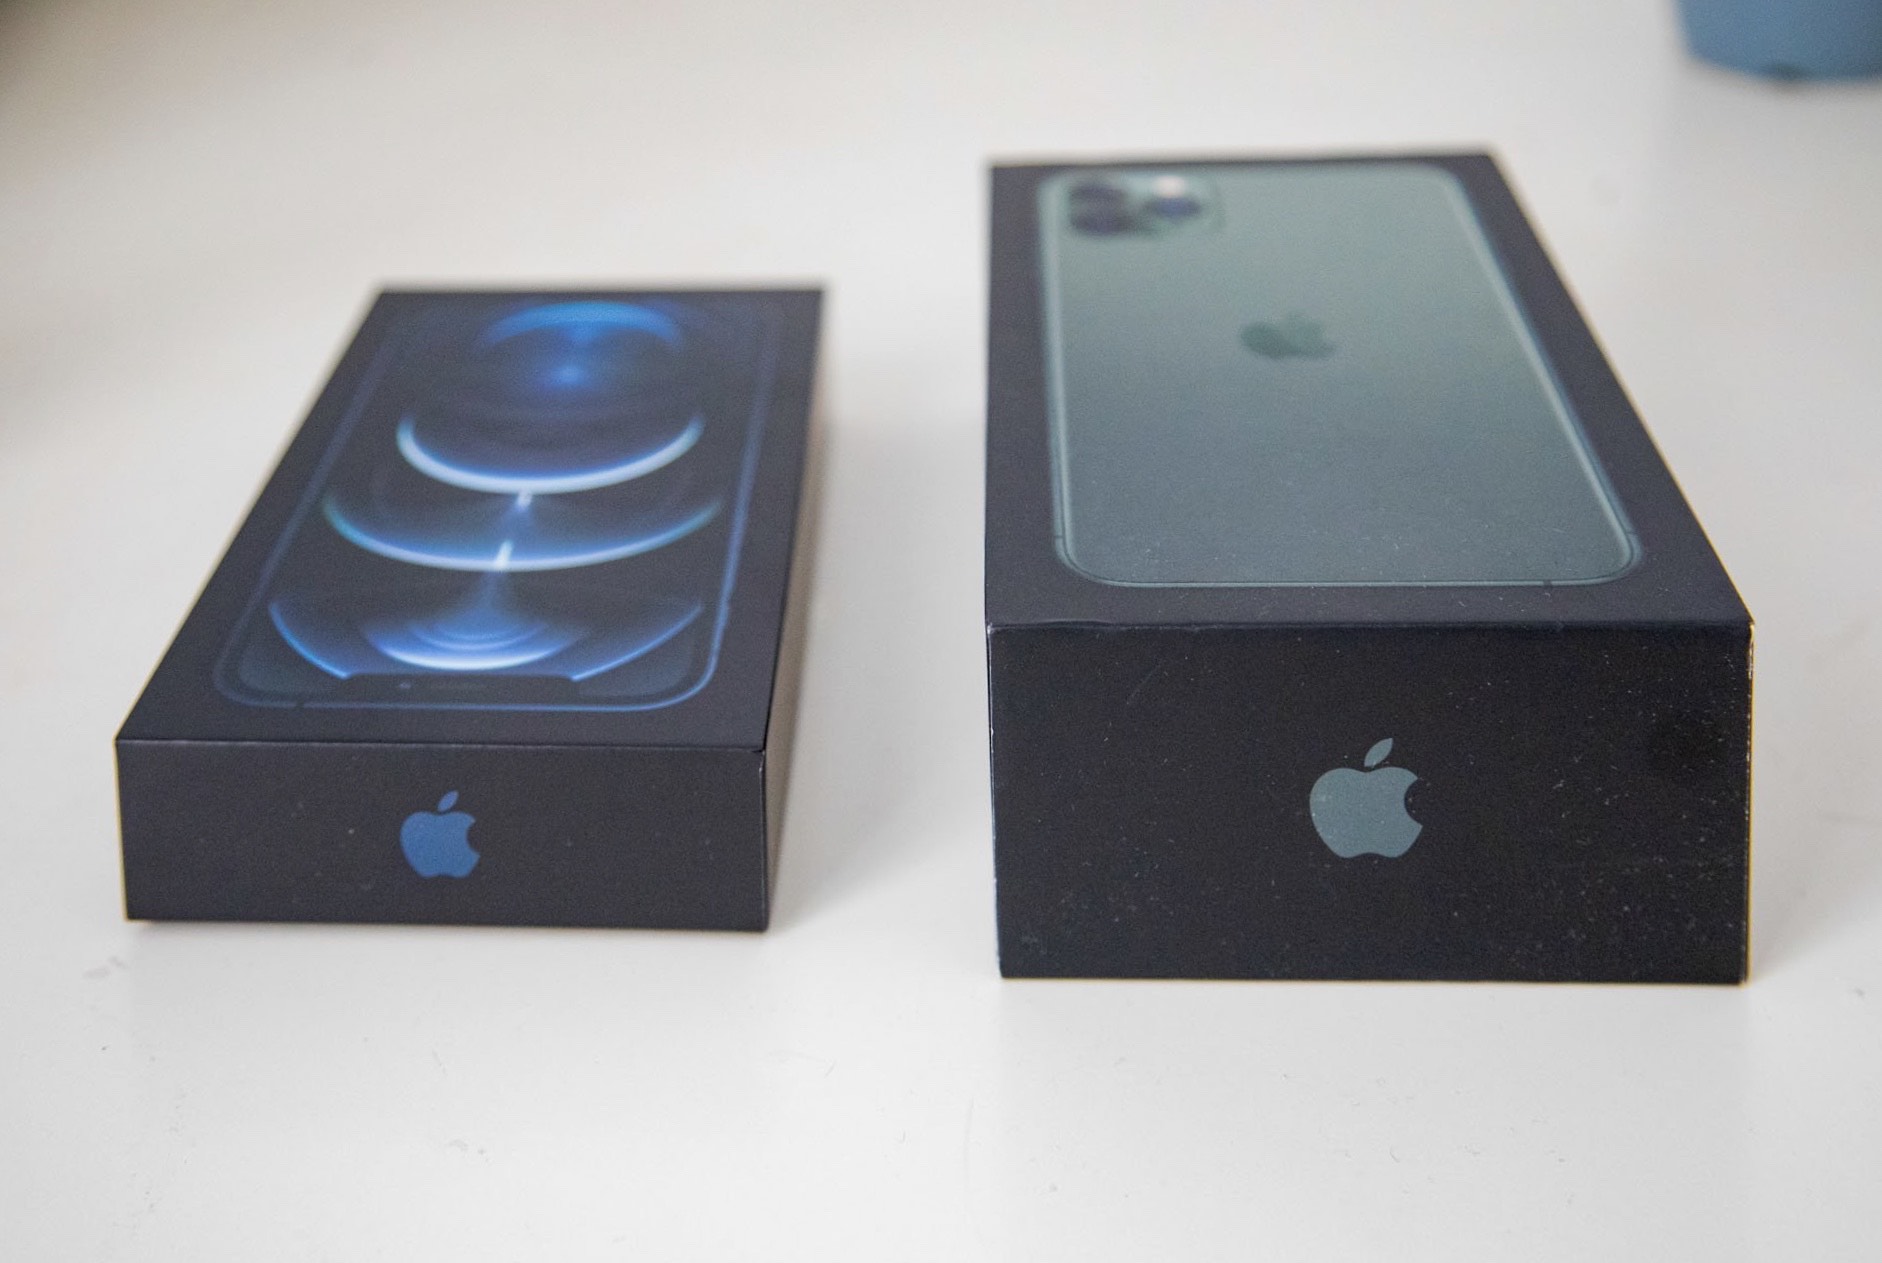 Kế hoạch cập nhật iPhone mới mà không cần mở hộp của Apple apple bánh mì cập nhật cập nhật iPhone độc đáo hình ảnh hoạt động iOS 17 2 iPhone iphone mới Kế hoạch magsafe NFC Phân tích